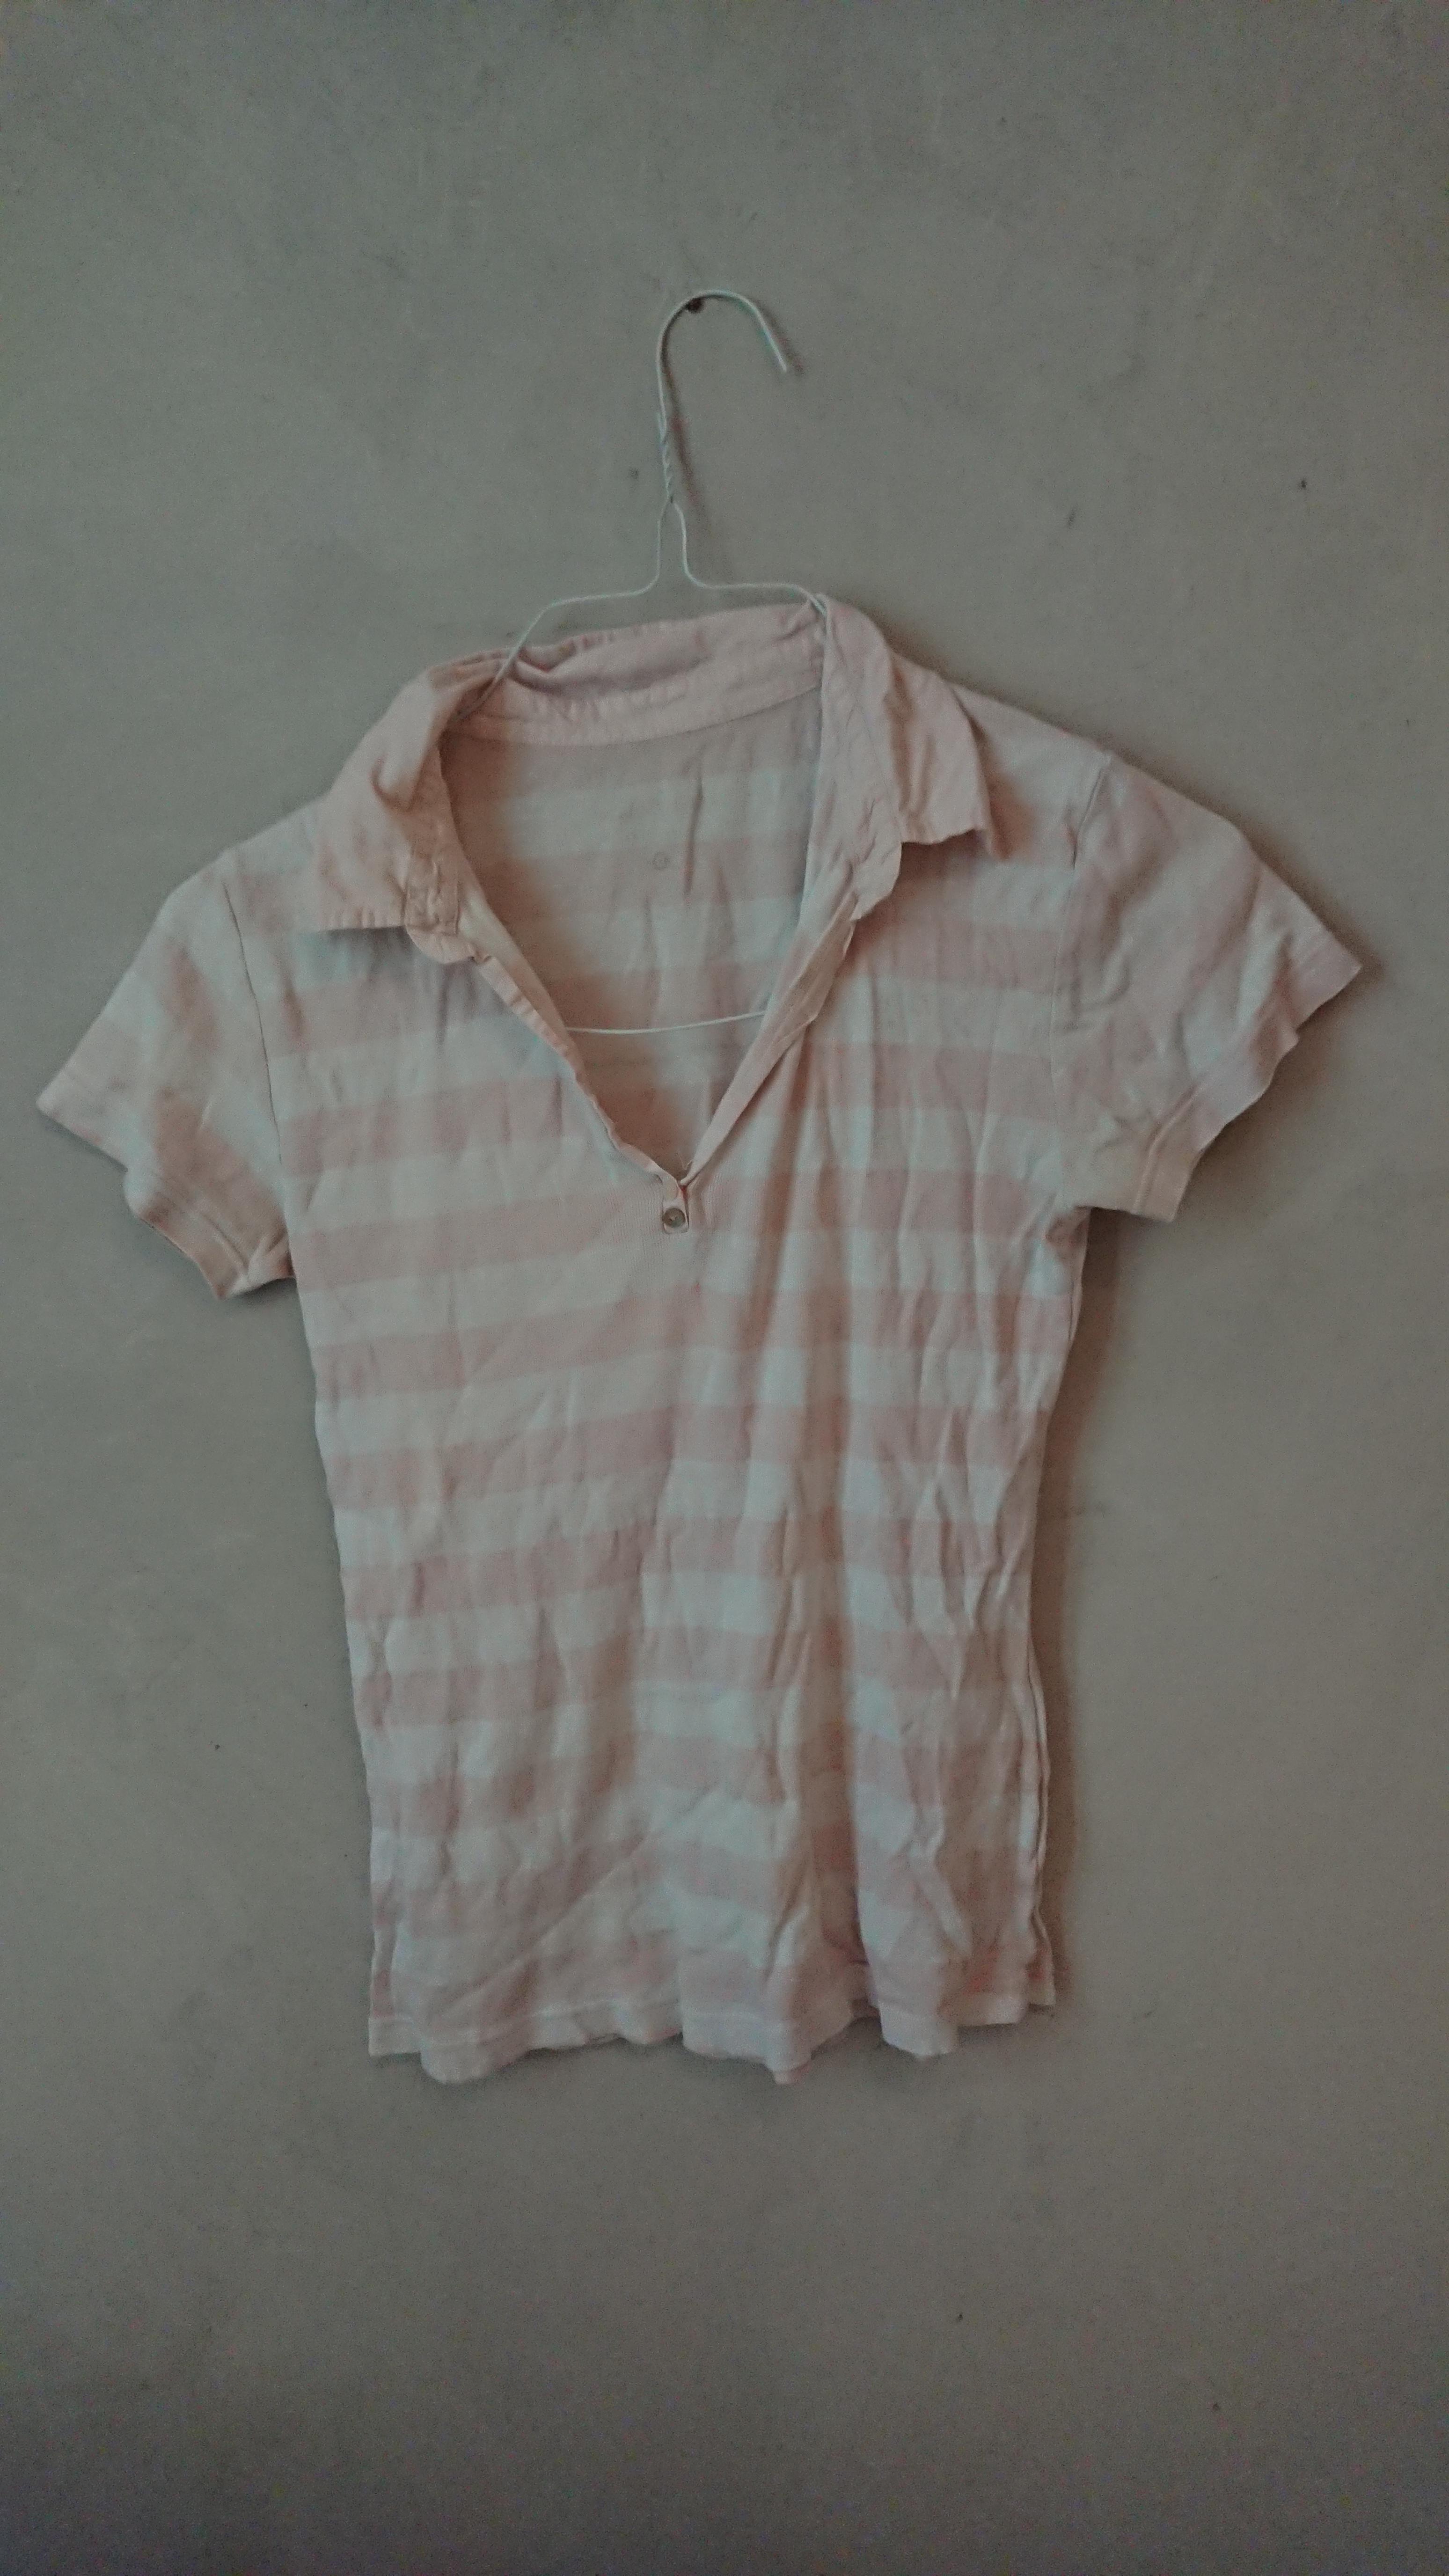 troc de troc t-shirt polo rayures taille m blanc et rose image 0